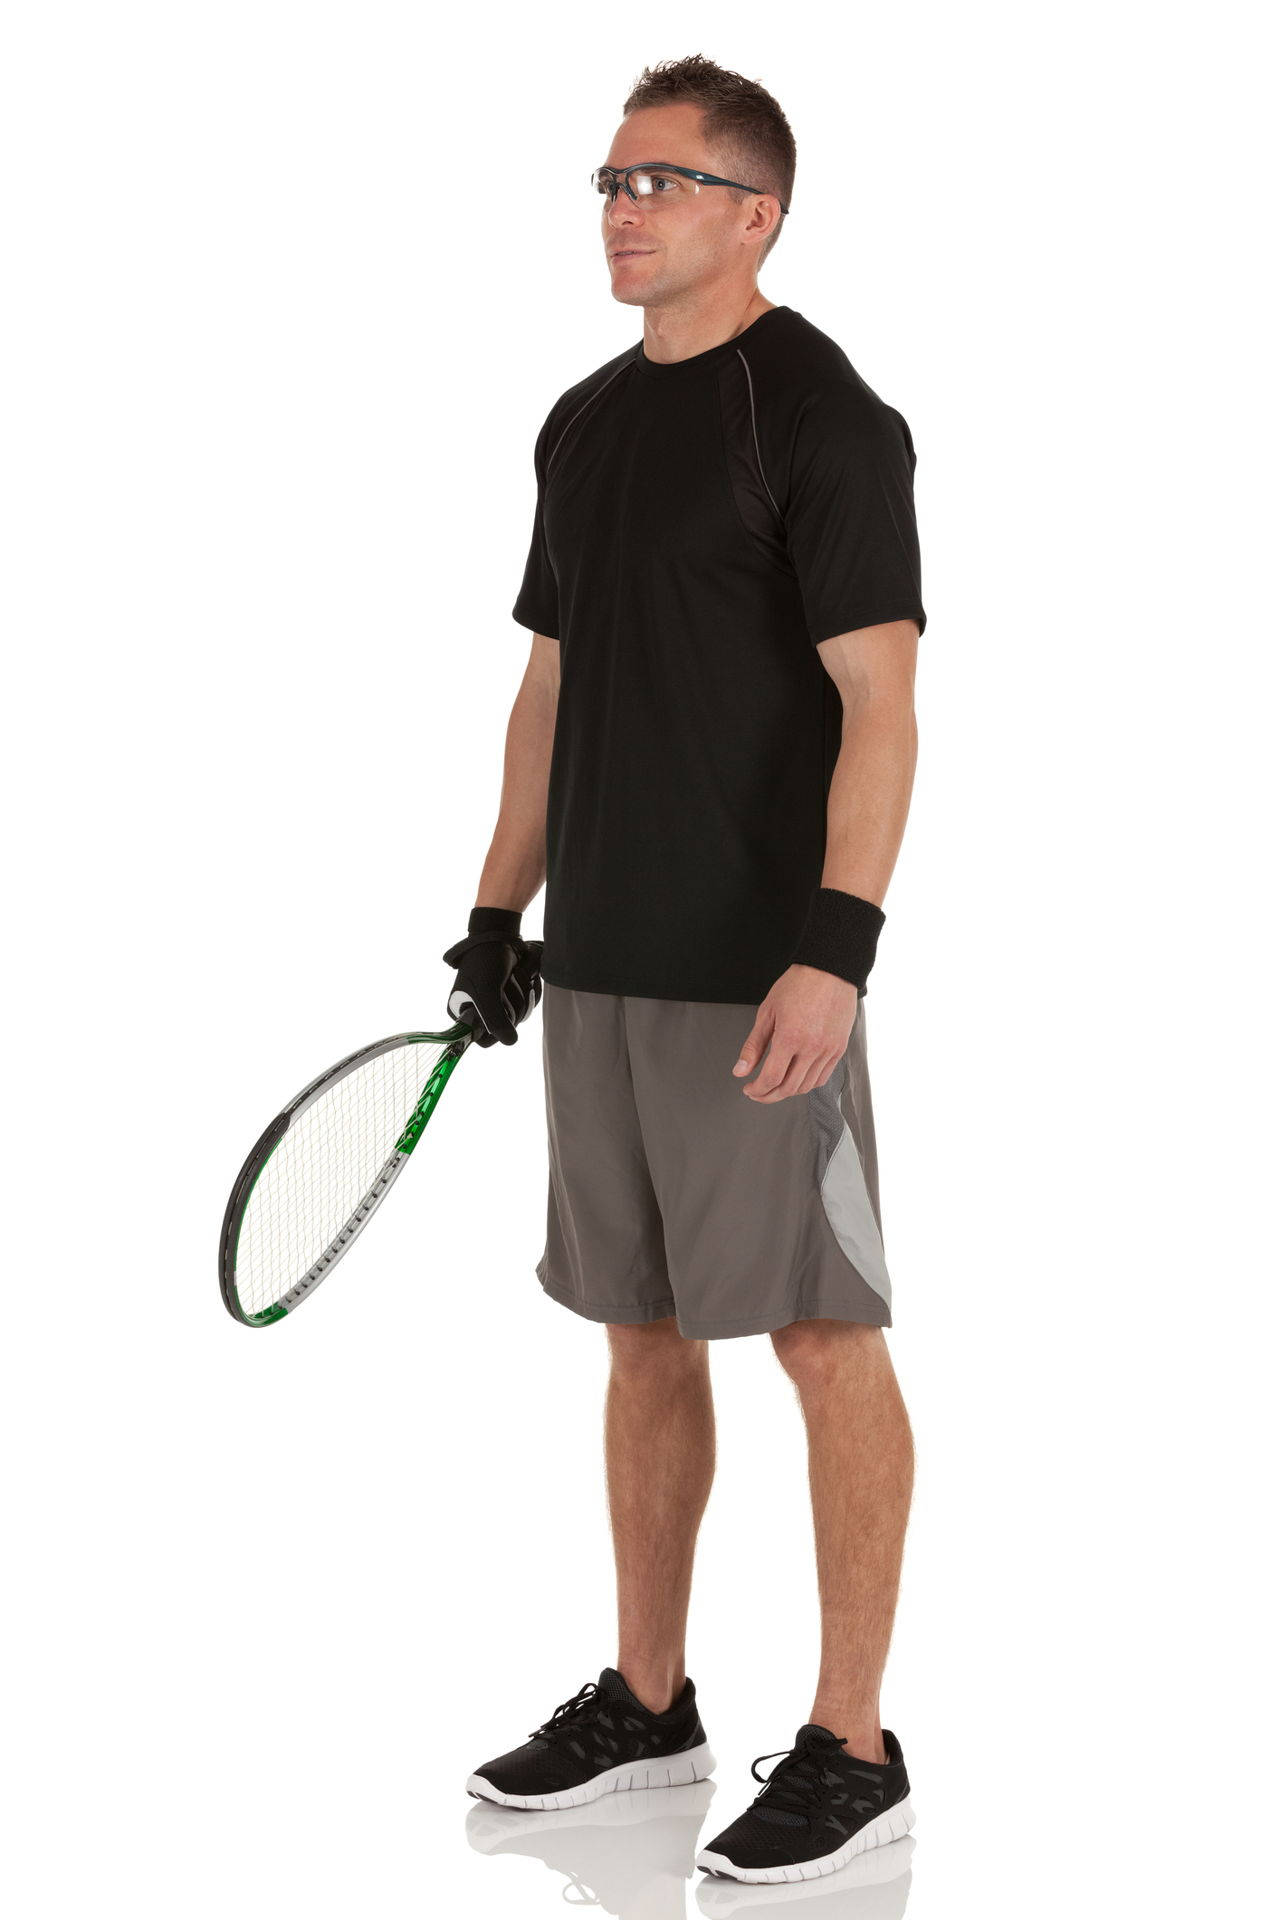 Mand Holder En Racquetball Rackets Wallpaper